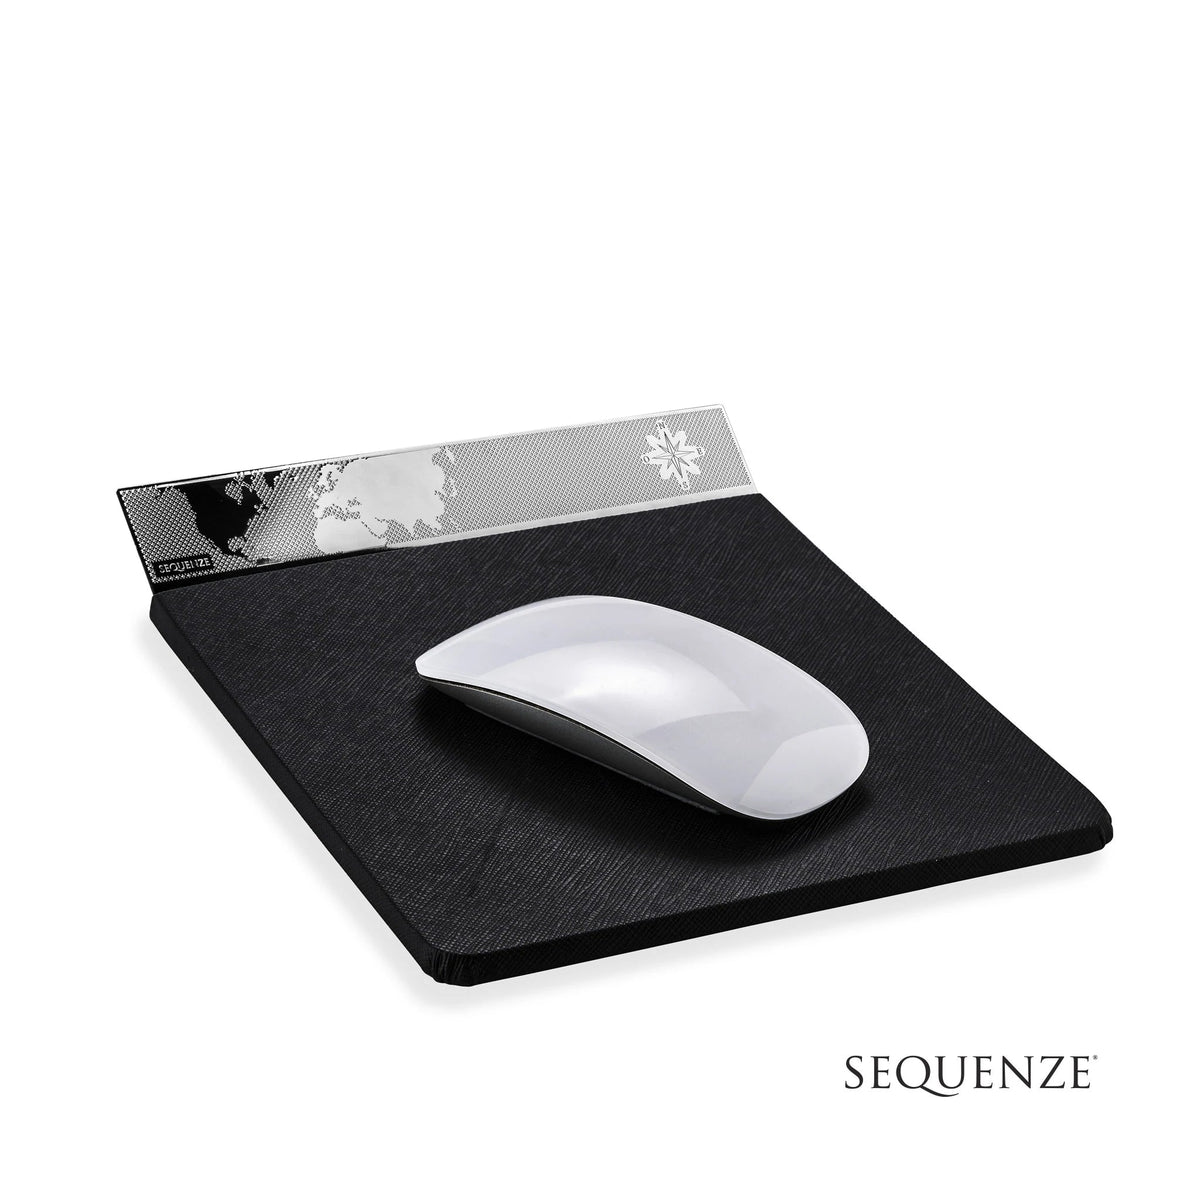 Mouse Pad SEQUENZE linea World Desk SQ1652 - bonini-gioielli